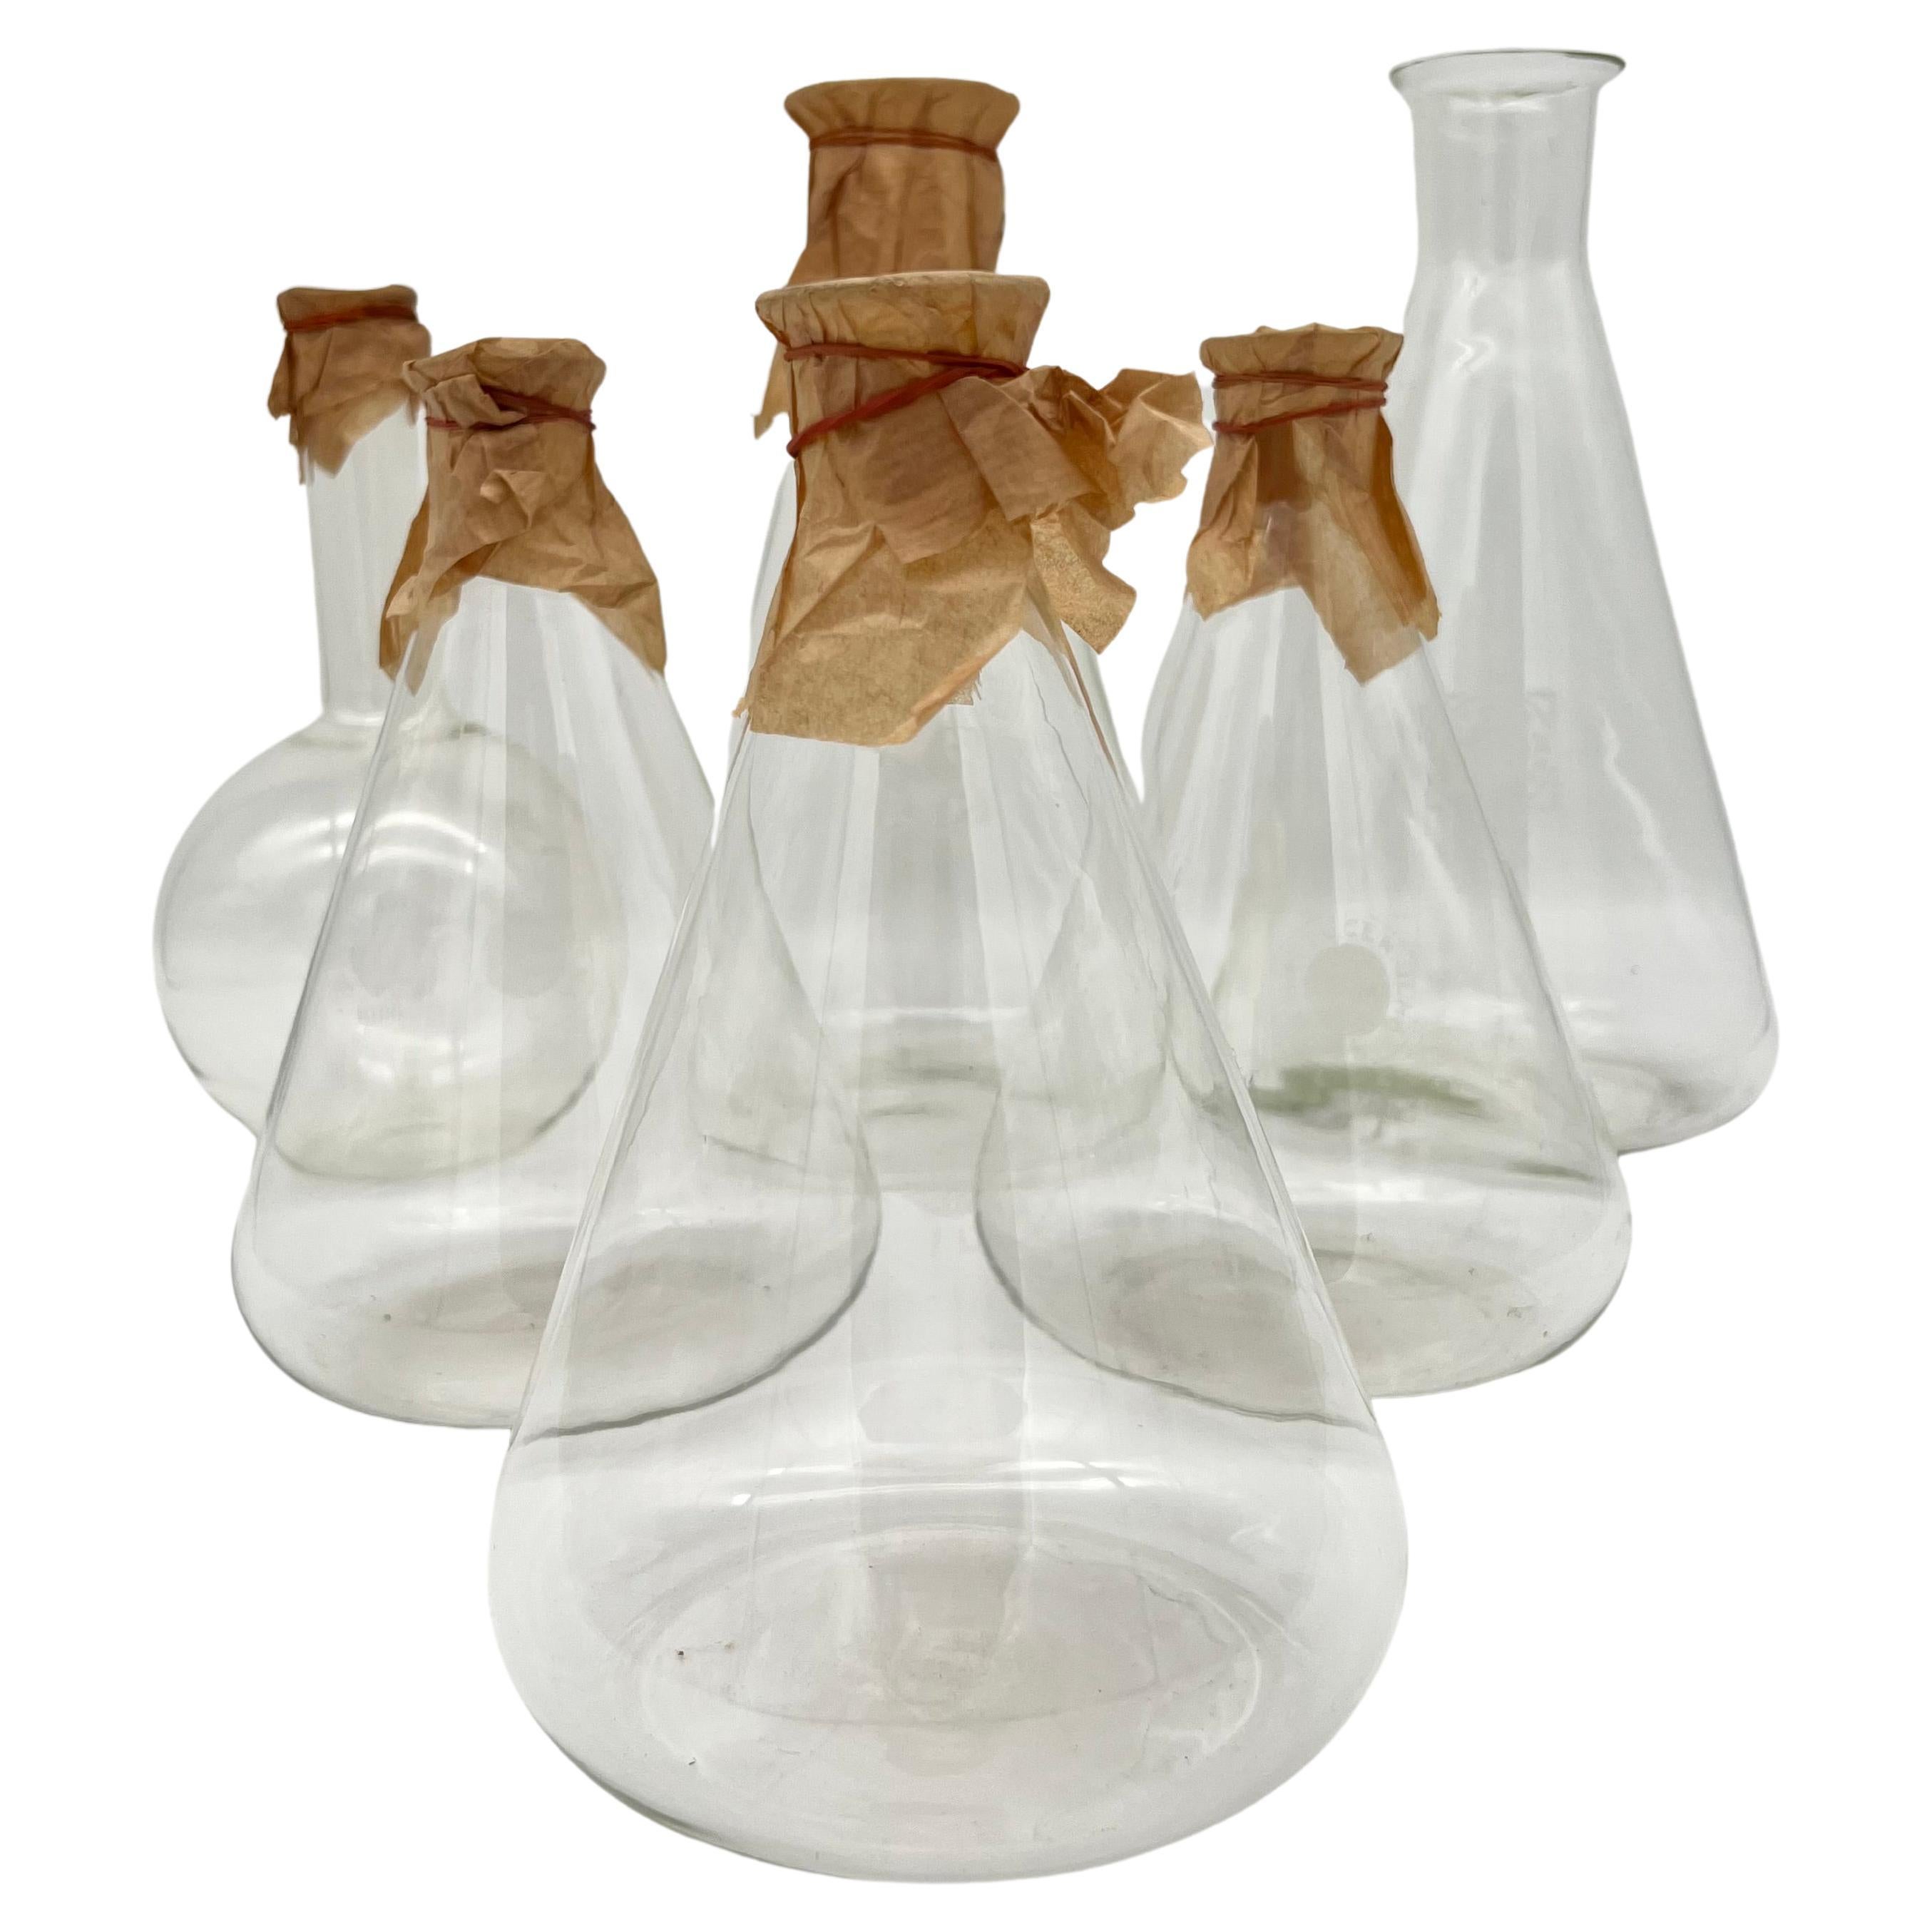 Satz von sechs alten Apothekenglasflaschen, hergestellt in Deutschland um 1900.

5 Flaschen aus Jena (Schott und Gen Jena) und 1 Wirag-Laborglas. 
Das Logo und das Volumen sind auf allen Flaschen eingraviert.

Kann als Dekoration, Vase oder in